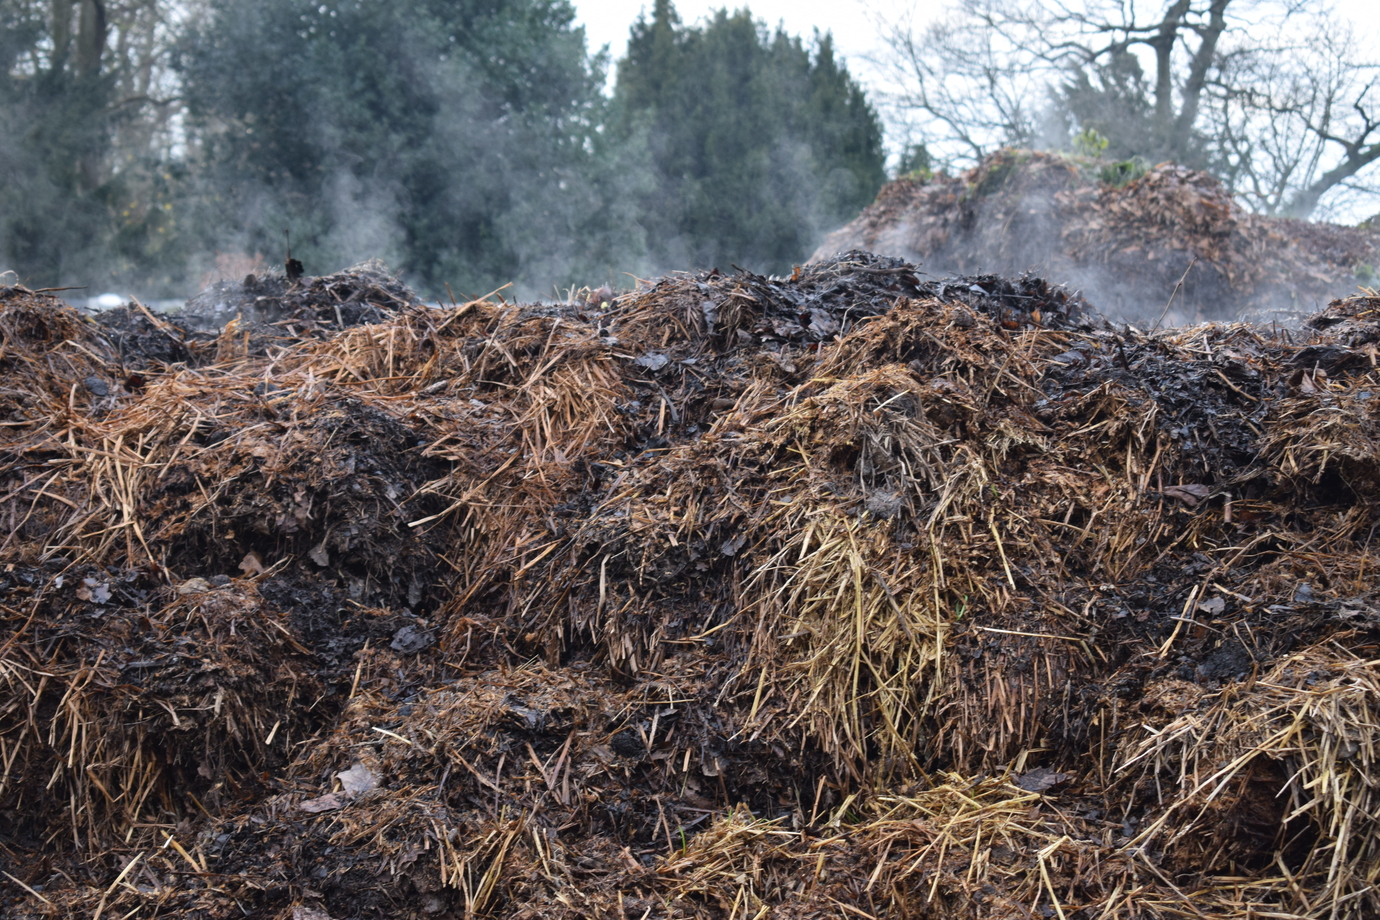 A pile of mulch 